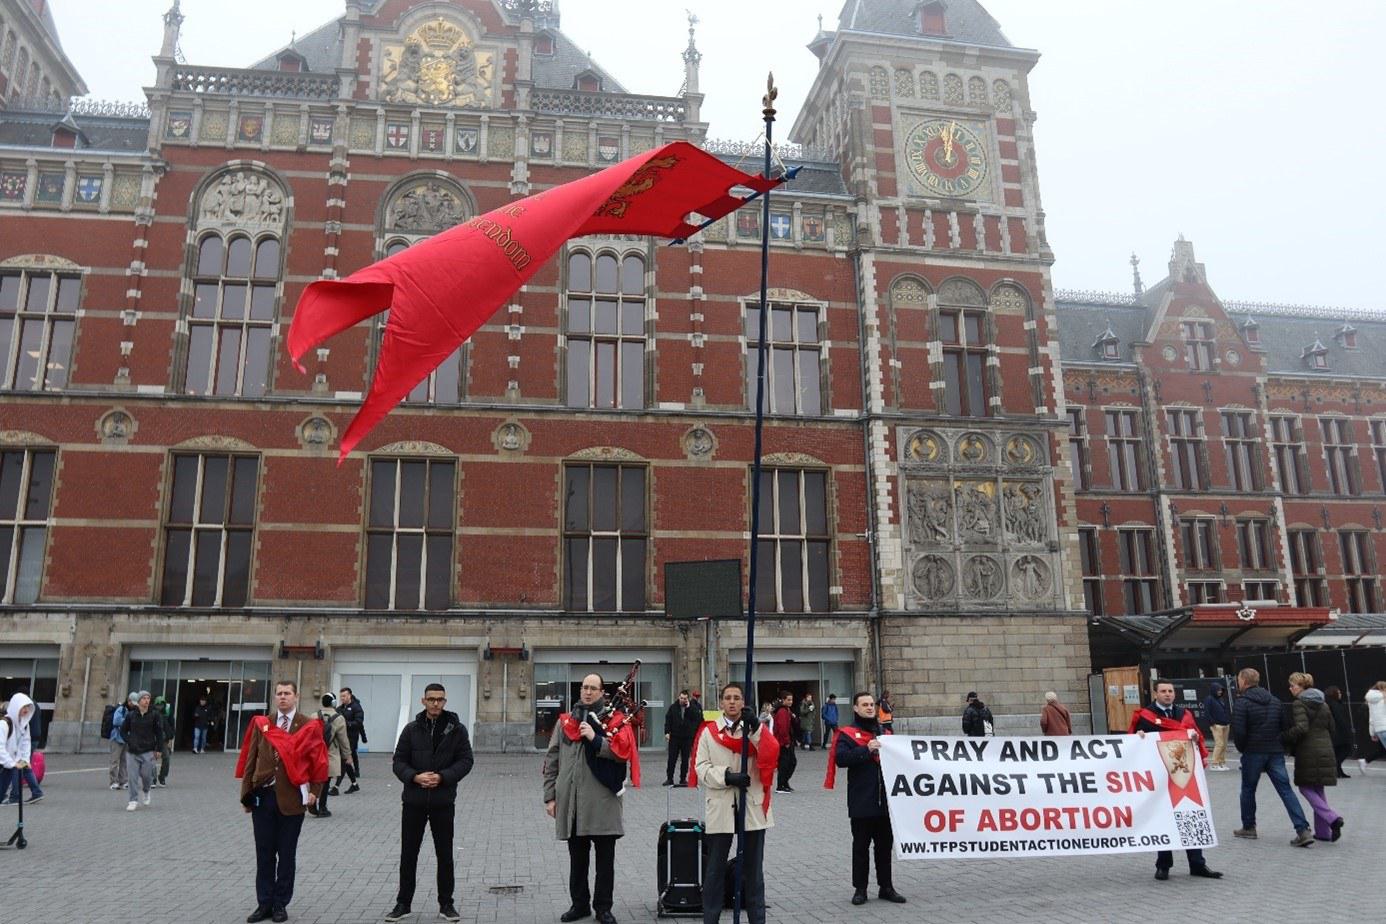 Tegen abortus de straat op in Amsterdam: "Dood het als je het haat!"